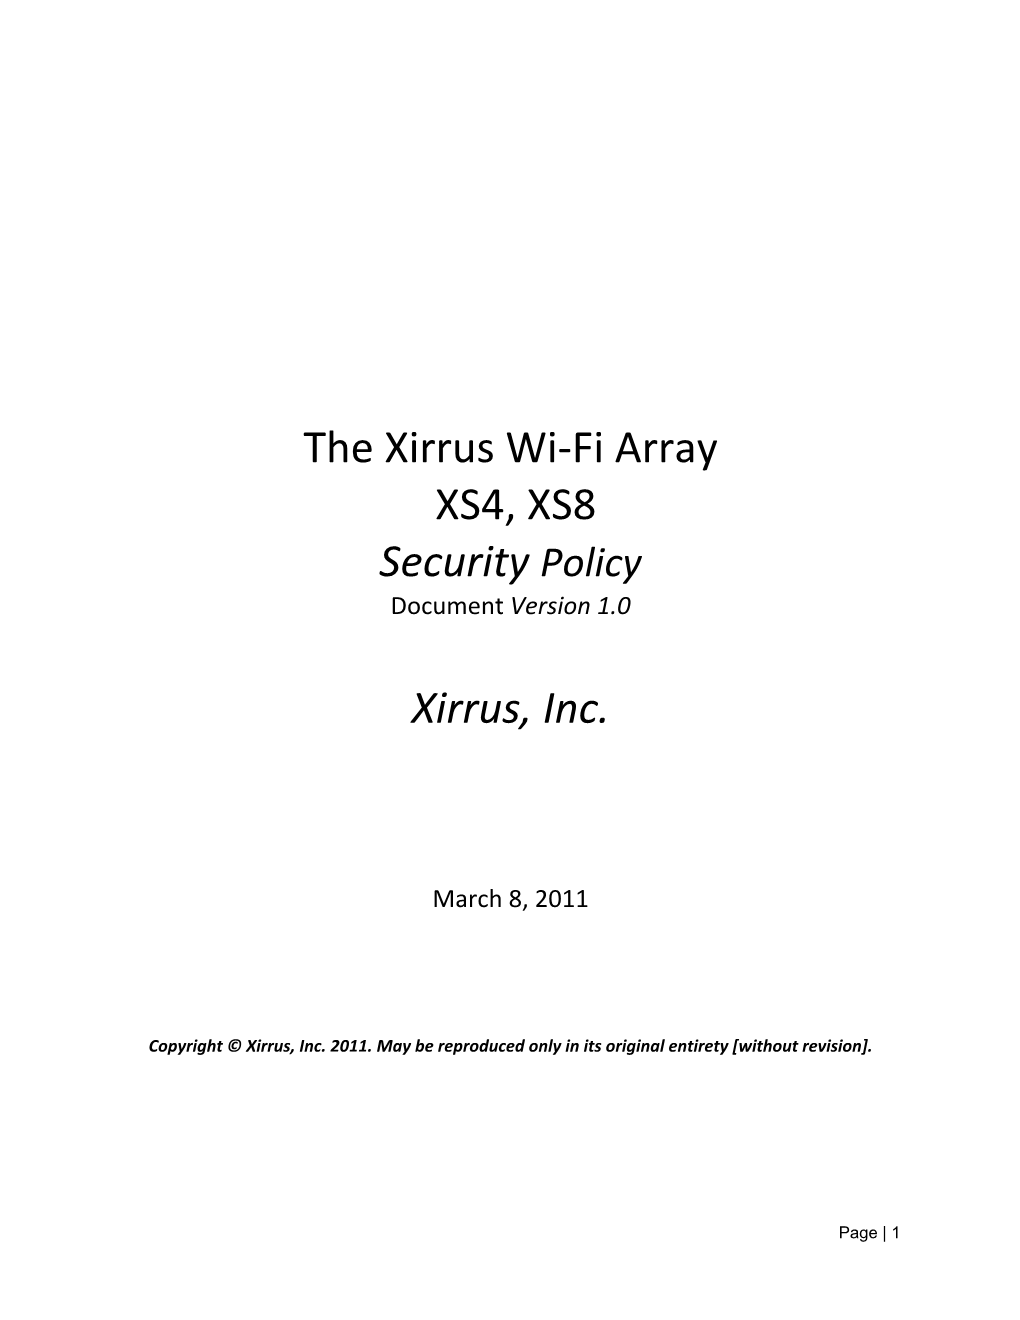 The Xirrus Wi-Fi Array XS4, XS8 Security Policy Xirrus, Inc